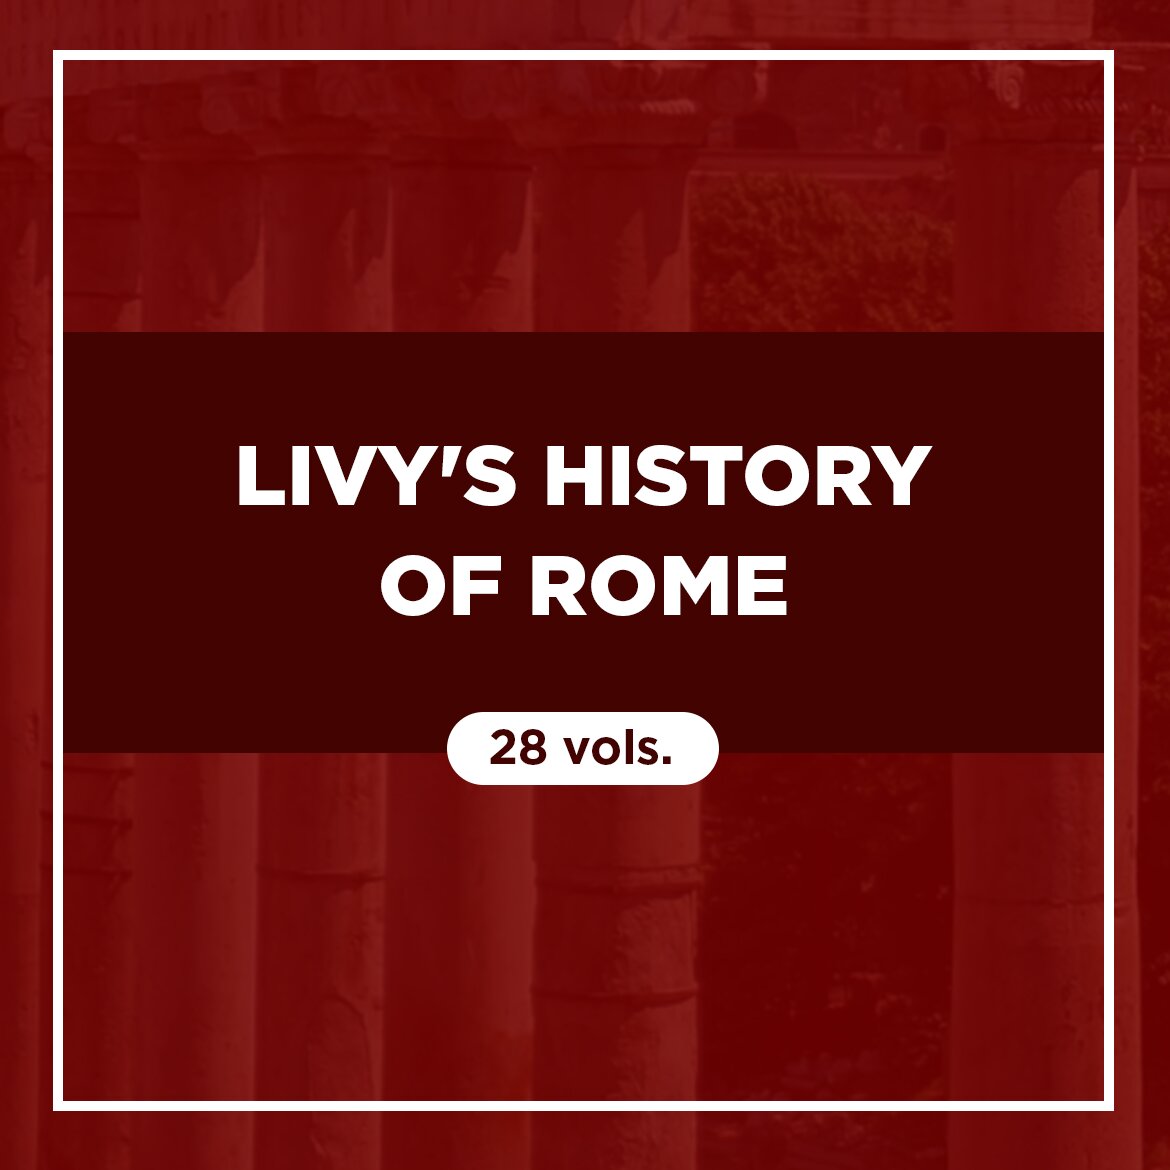 Livy's History of Rome (28 vols.)